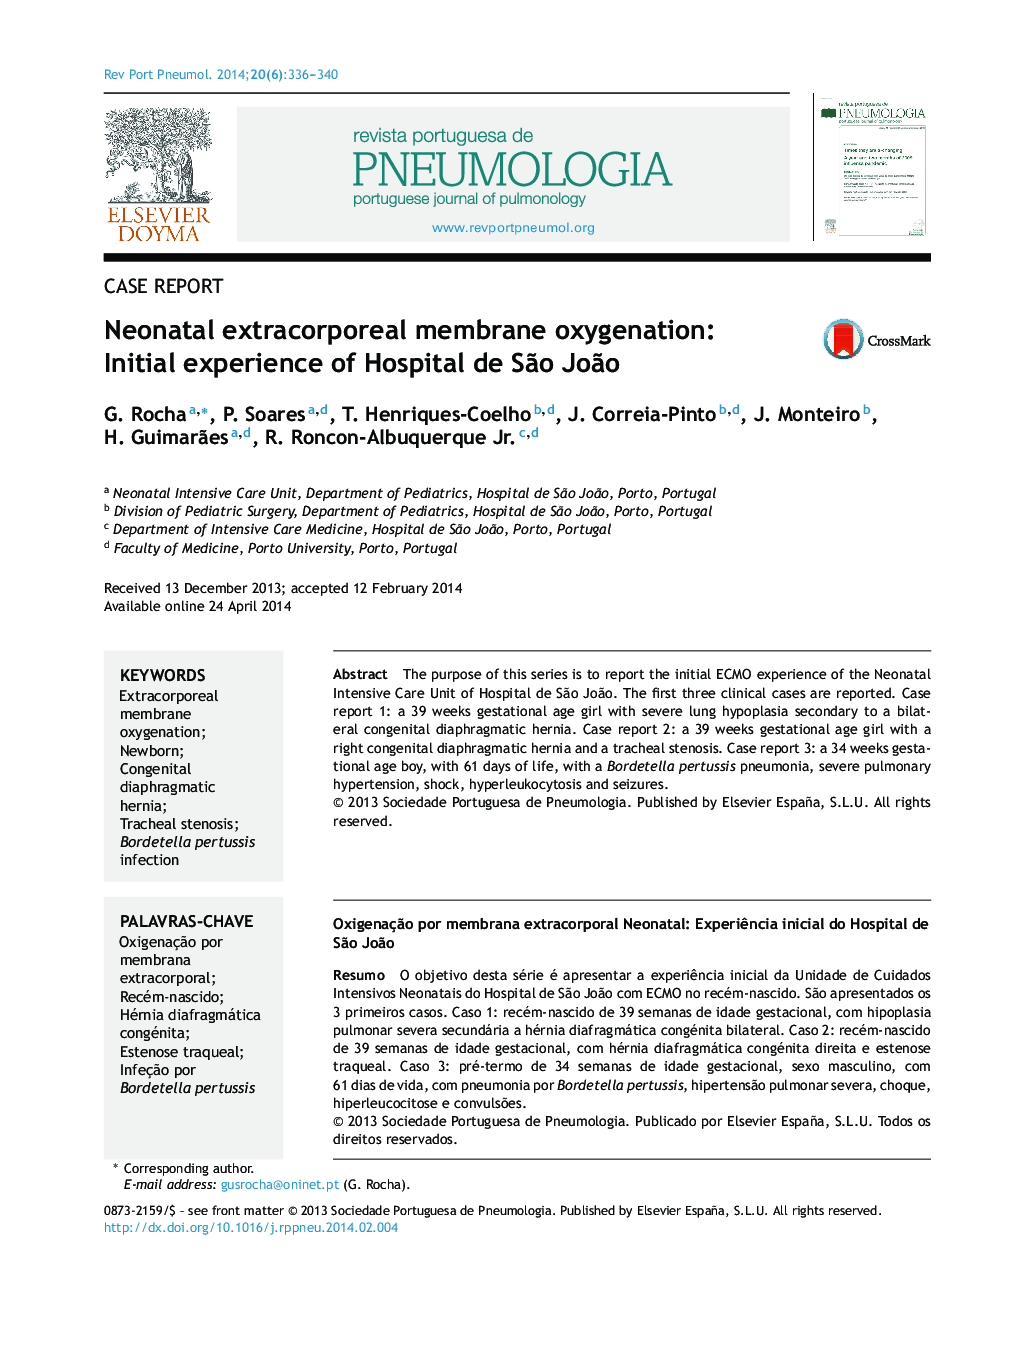 Neonatal extracorporeal membrane oxygenation: Initial experience of Hospital de São João